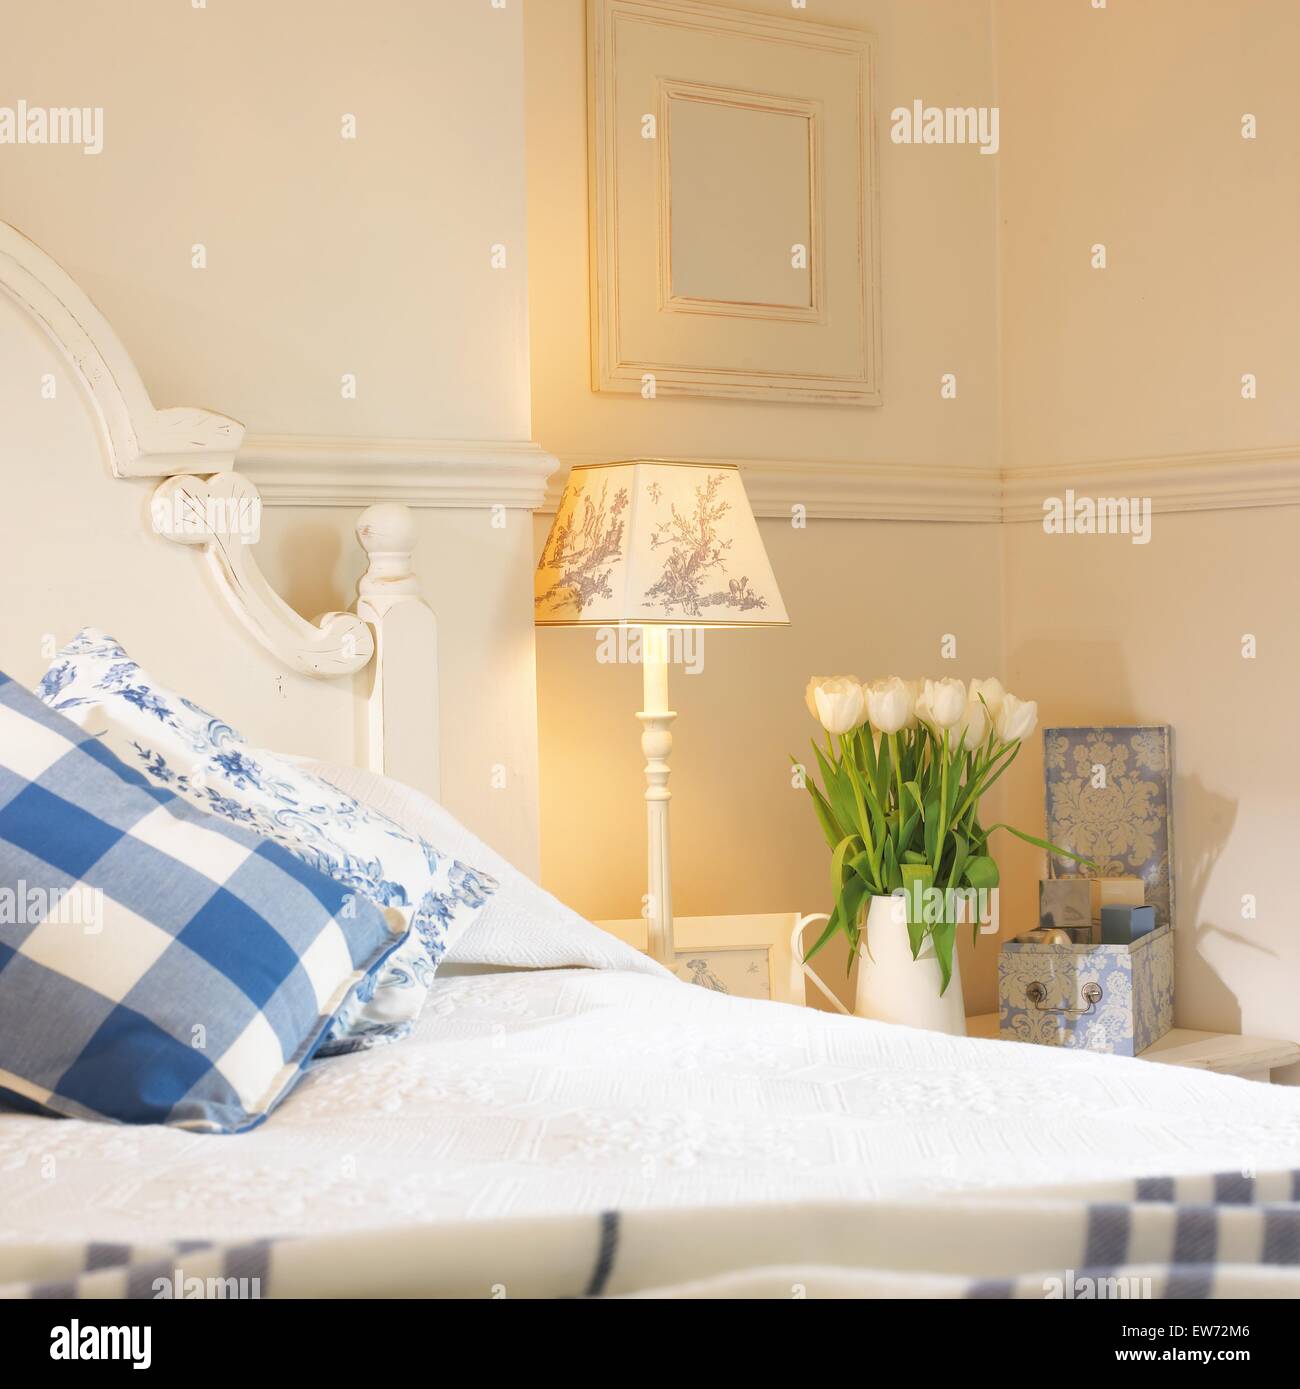 Blue+bianco a scacchi cuscini sul letto dipinte di bianco camera da letto con una lampada accesa e vaso di tulipani bianco sul comodino Foto Stock